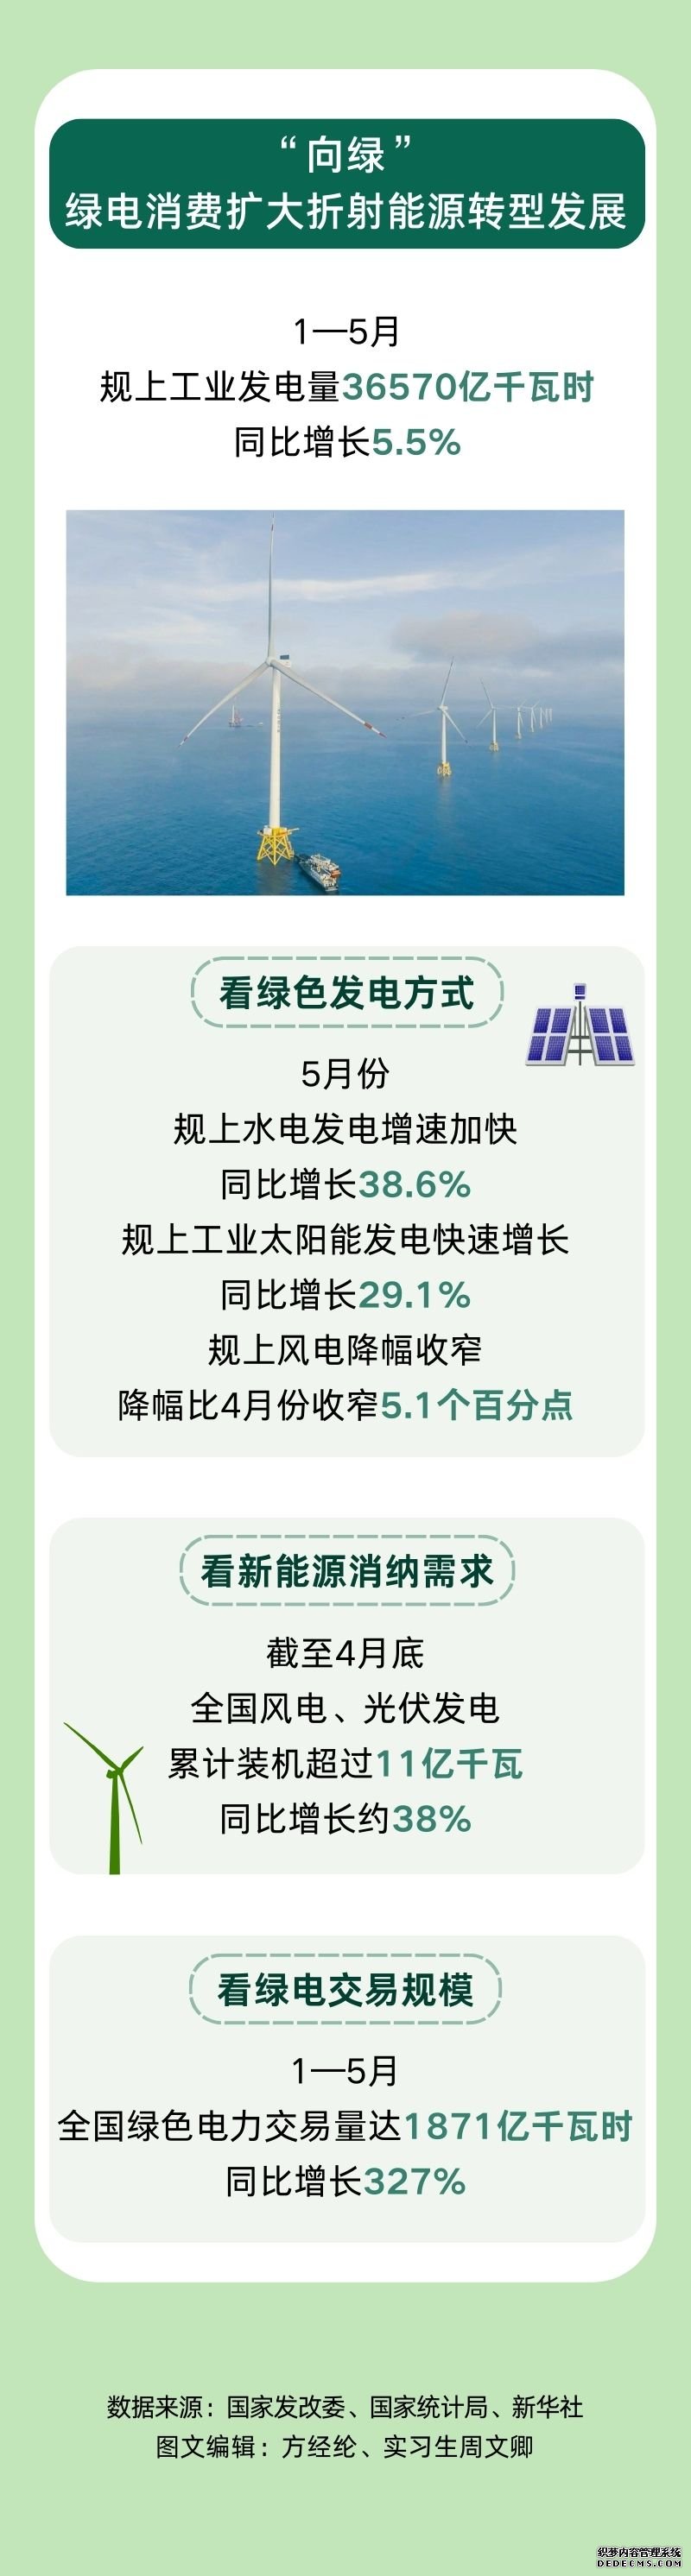 数读中国 | 从电力看发展热力 1至5月我国用电呈现快速增长